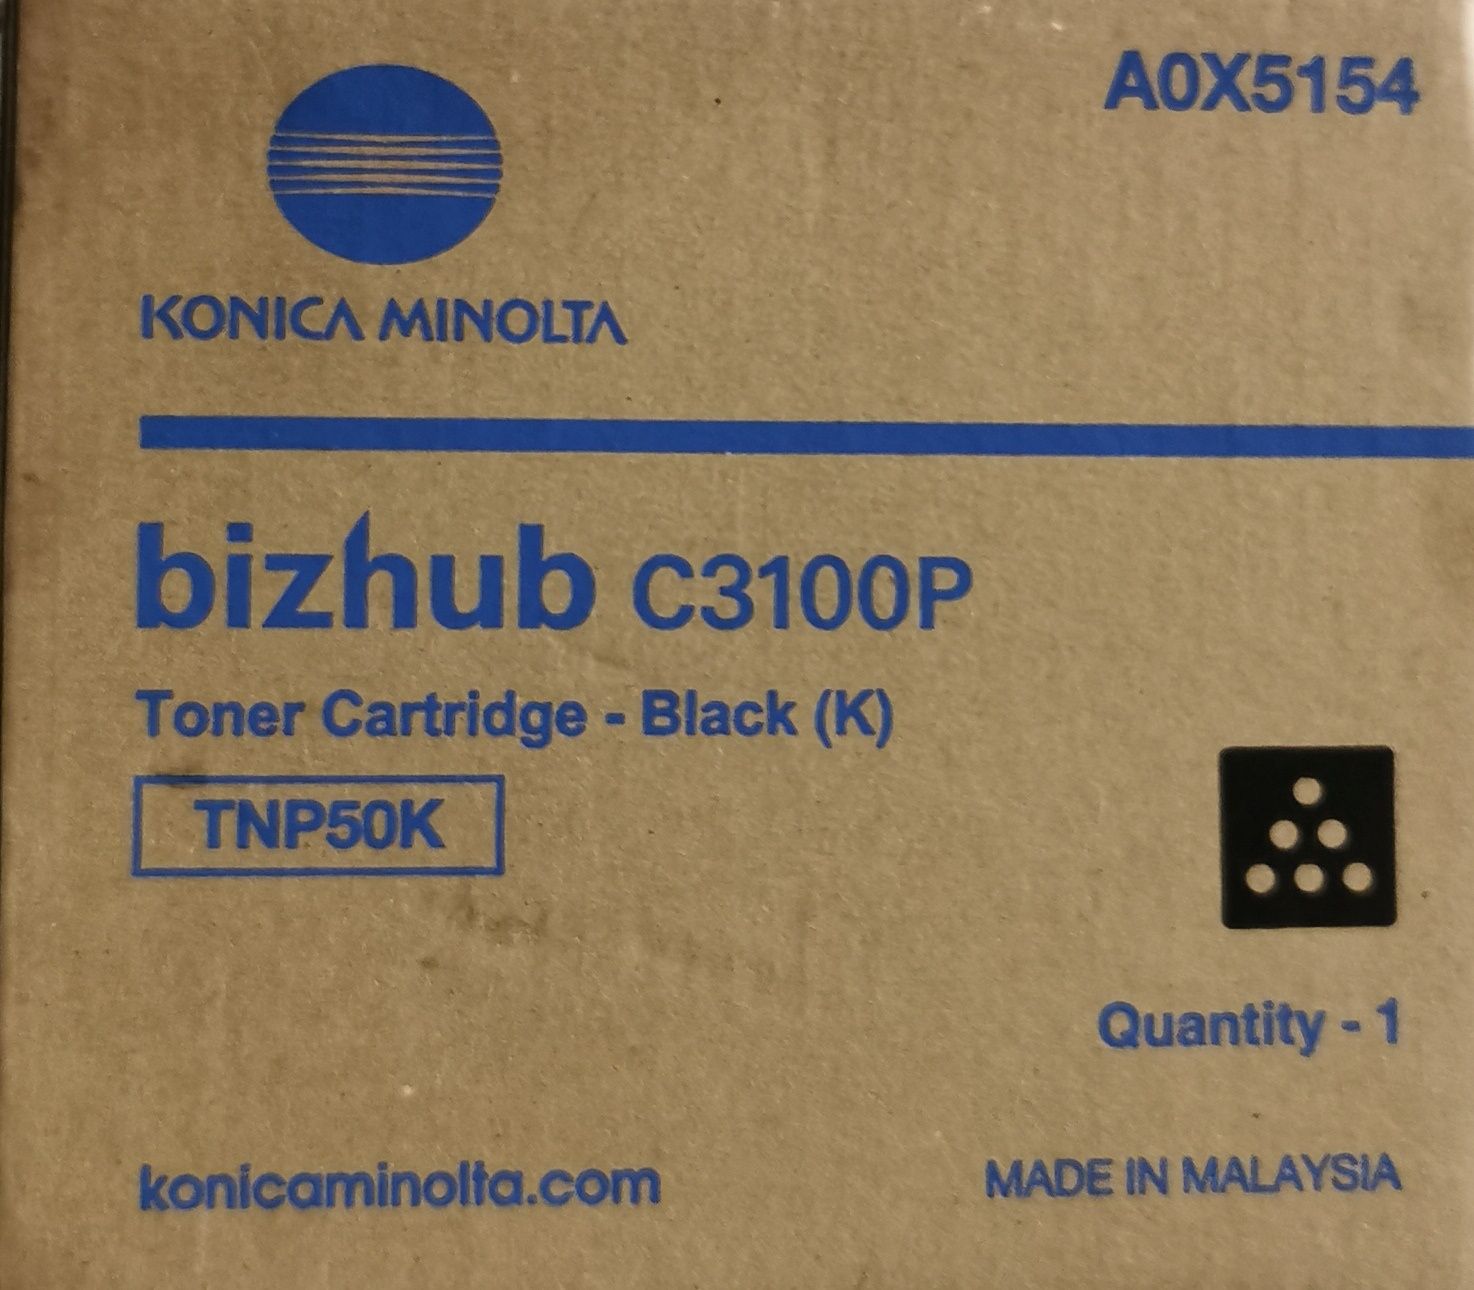 Toner Konica Minolta bitzhub C3100P